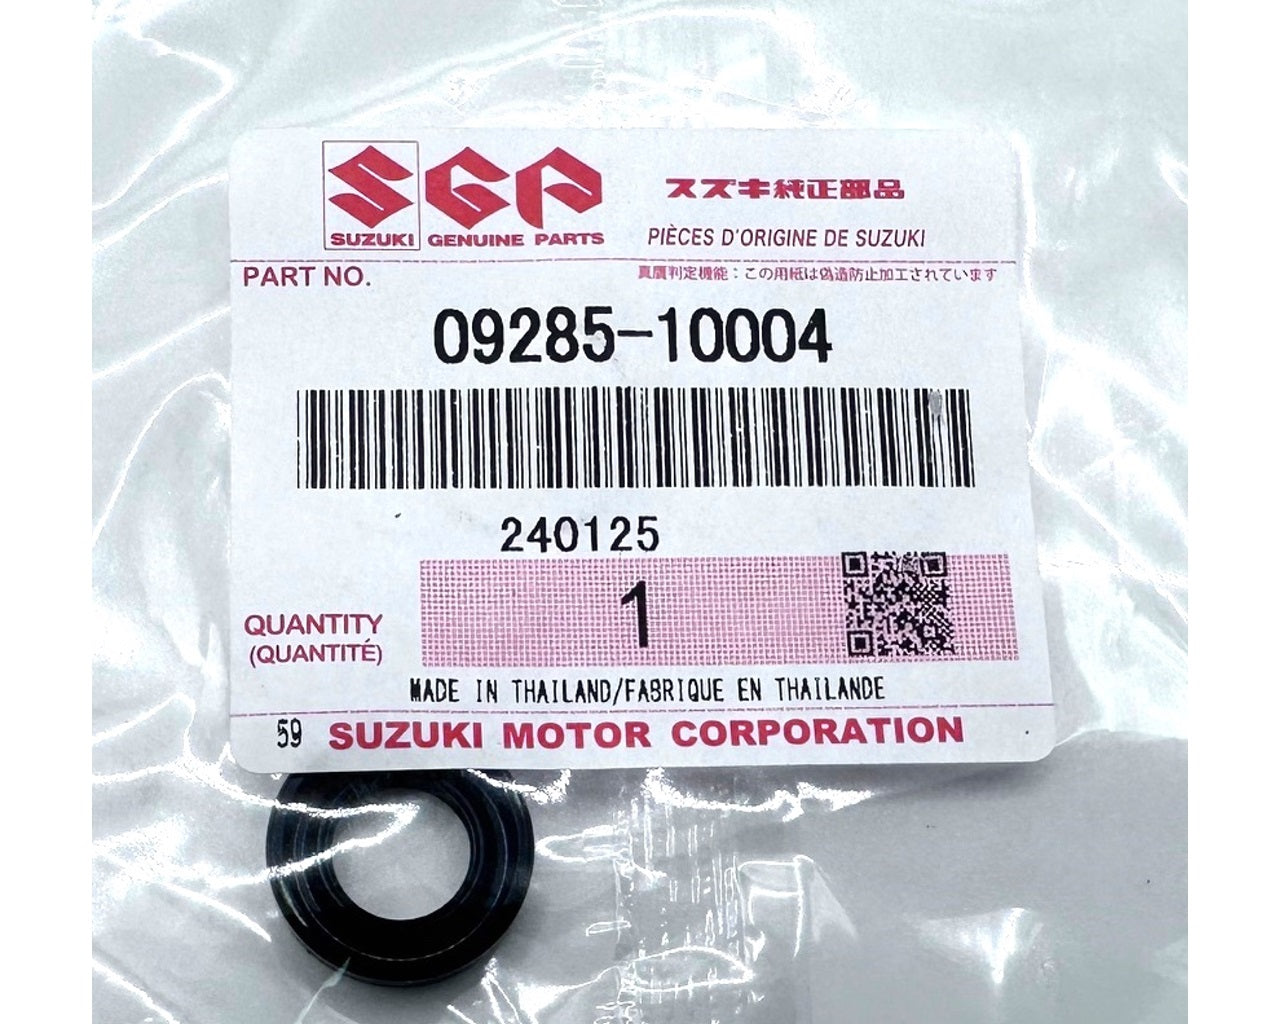 Suzuki Clutch Push Rod Seal - Outter GSX-R1000 750 600 VZ800 SV650 09285-10004